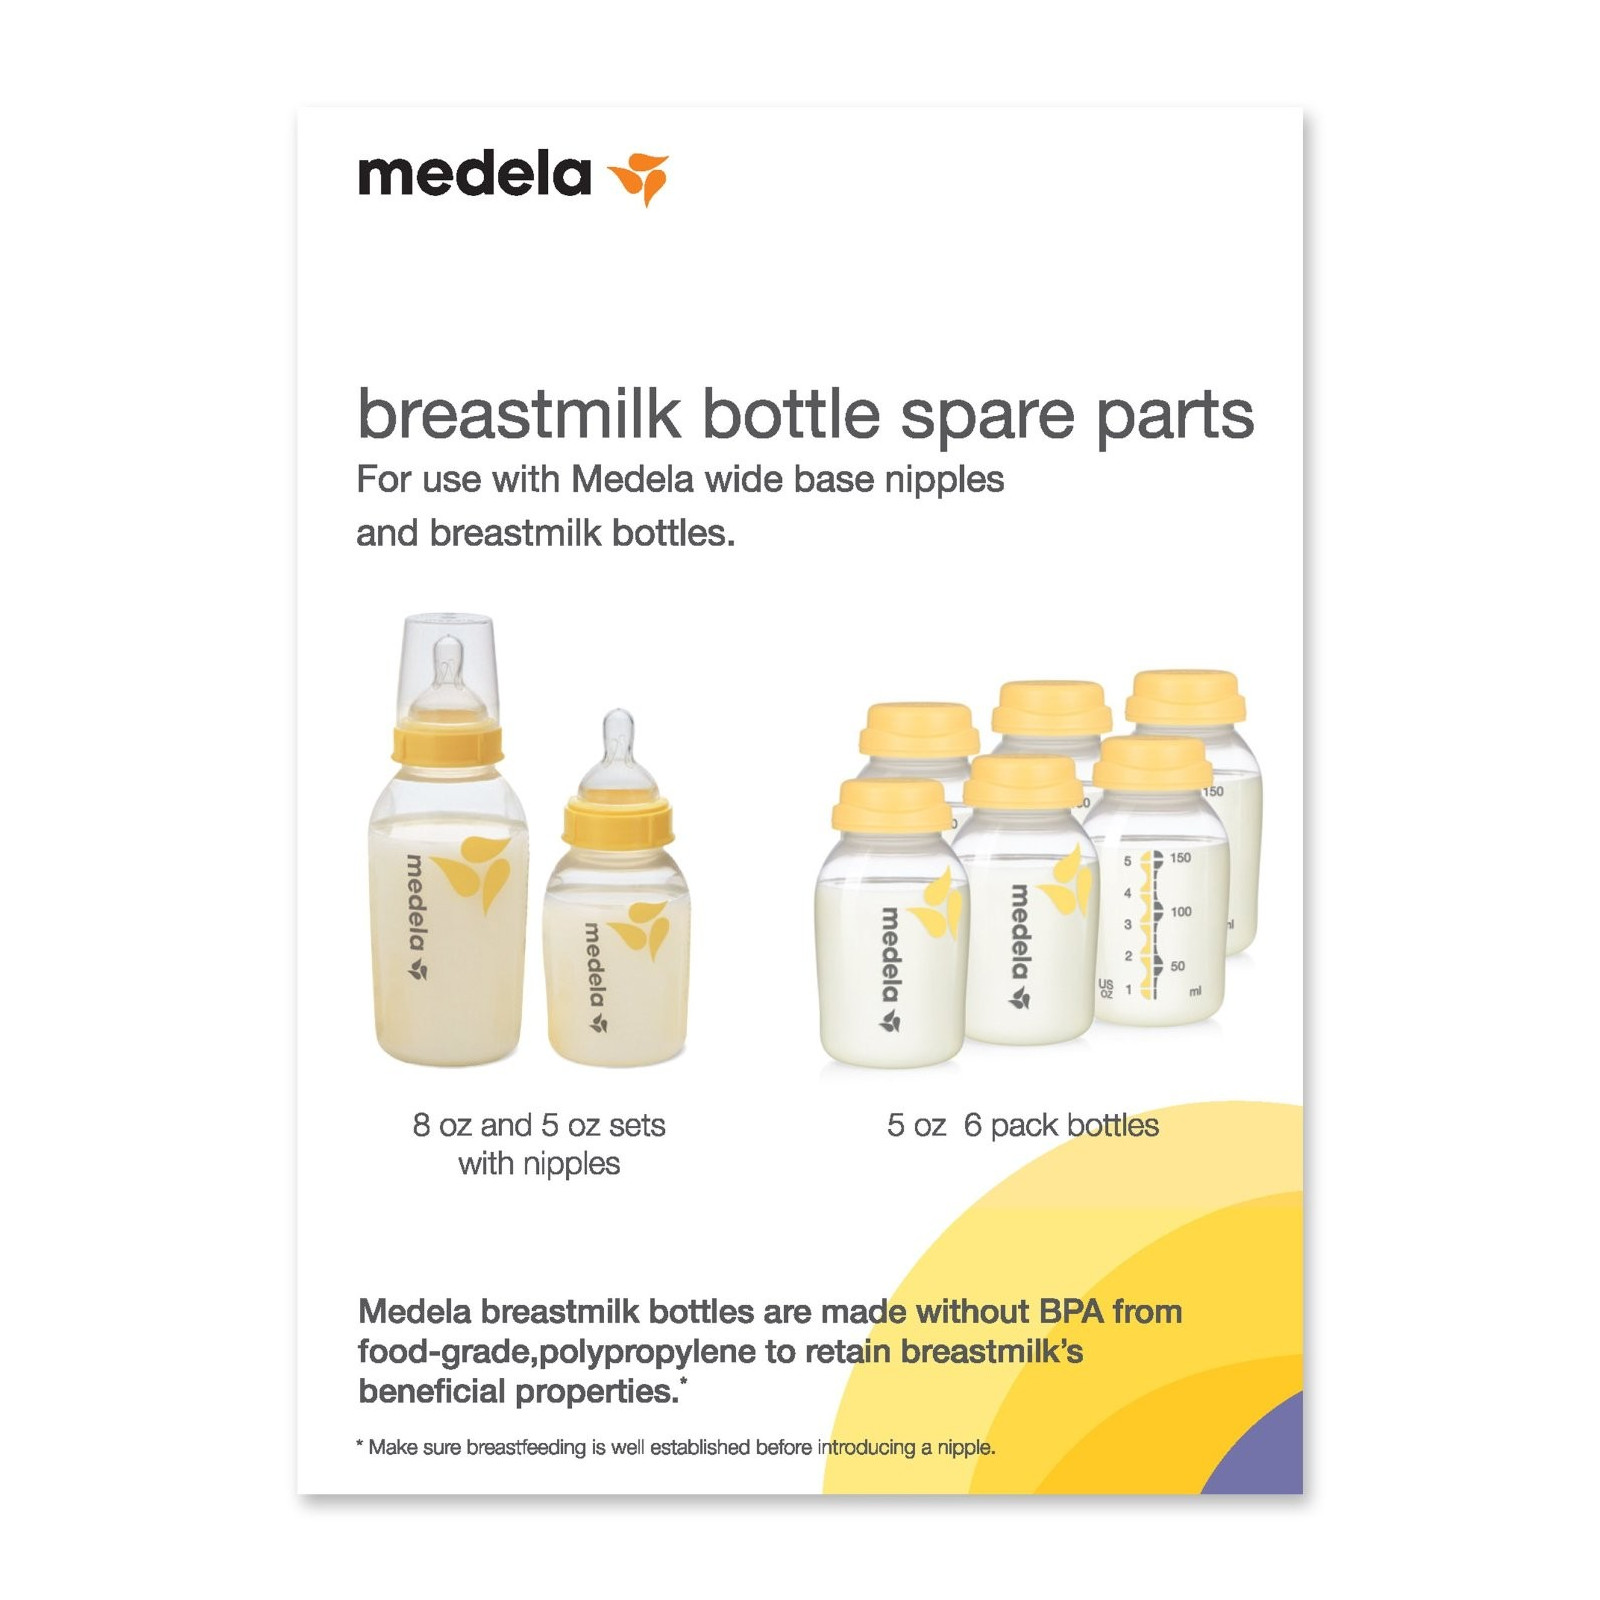 Medela Breastmilk Feeding Gift Set